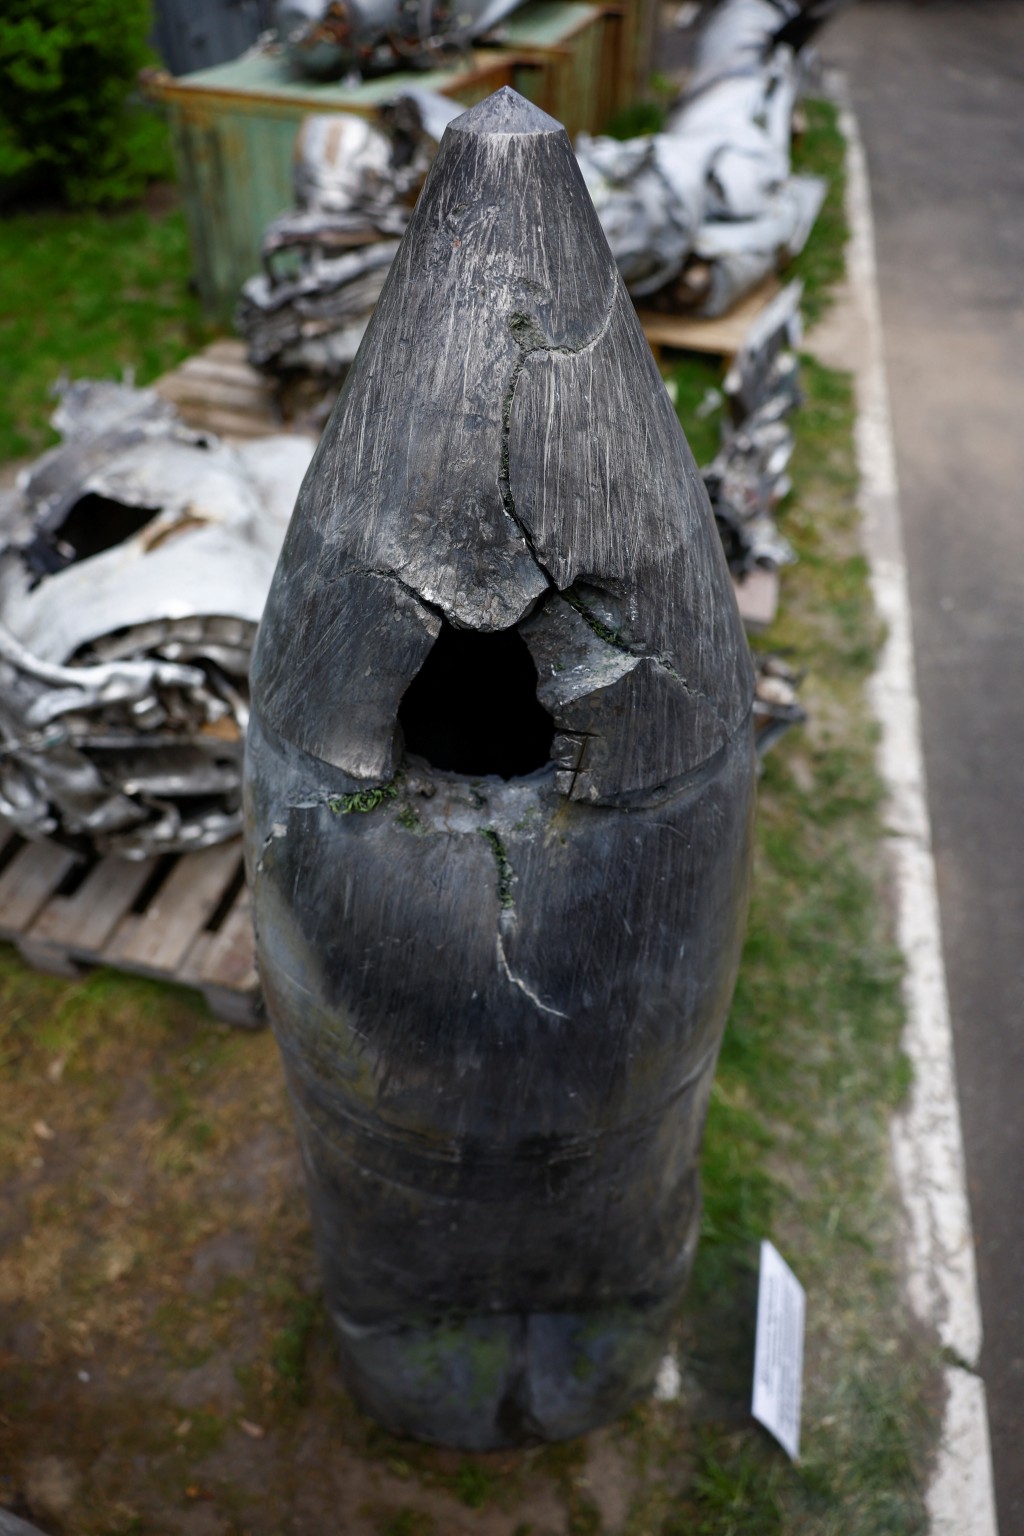 乌方展示的「匕首」（Kh-47M2 Kinzhal）高超音速导弹残骸。 路透社